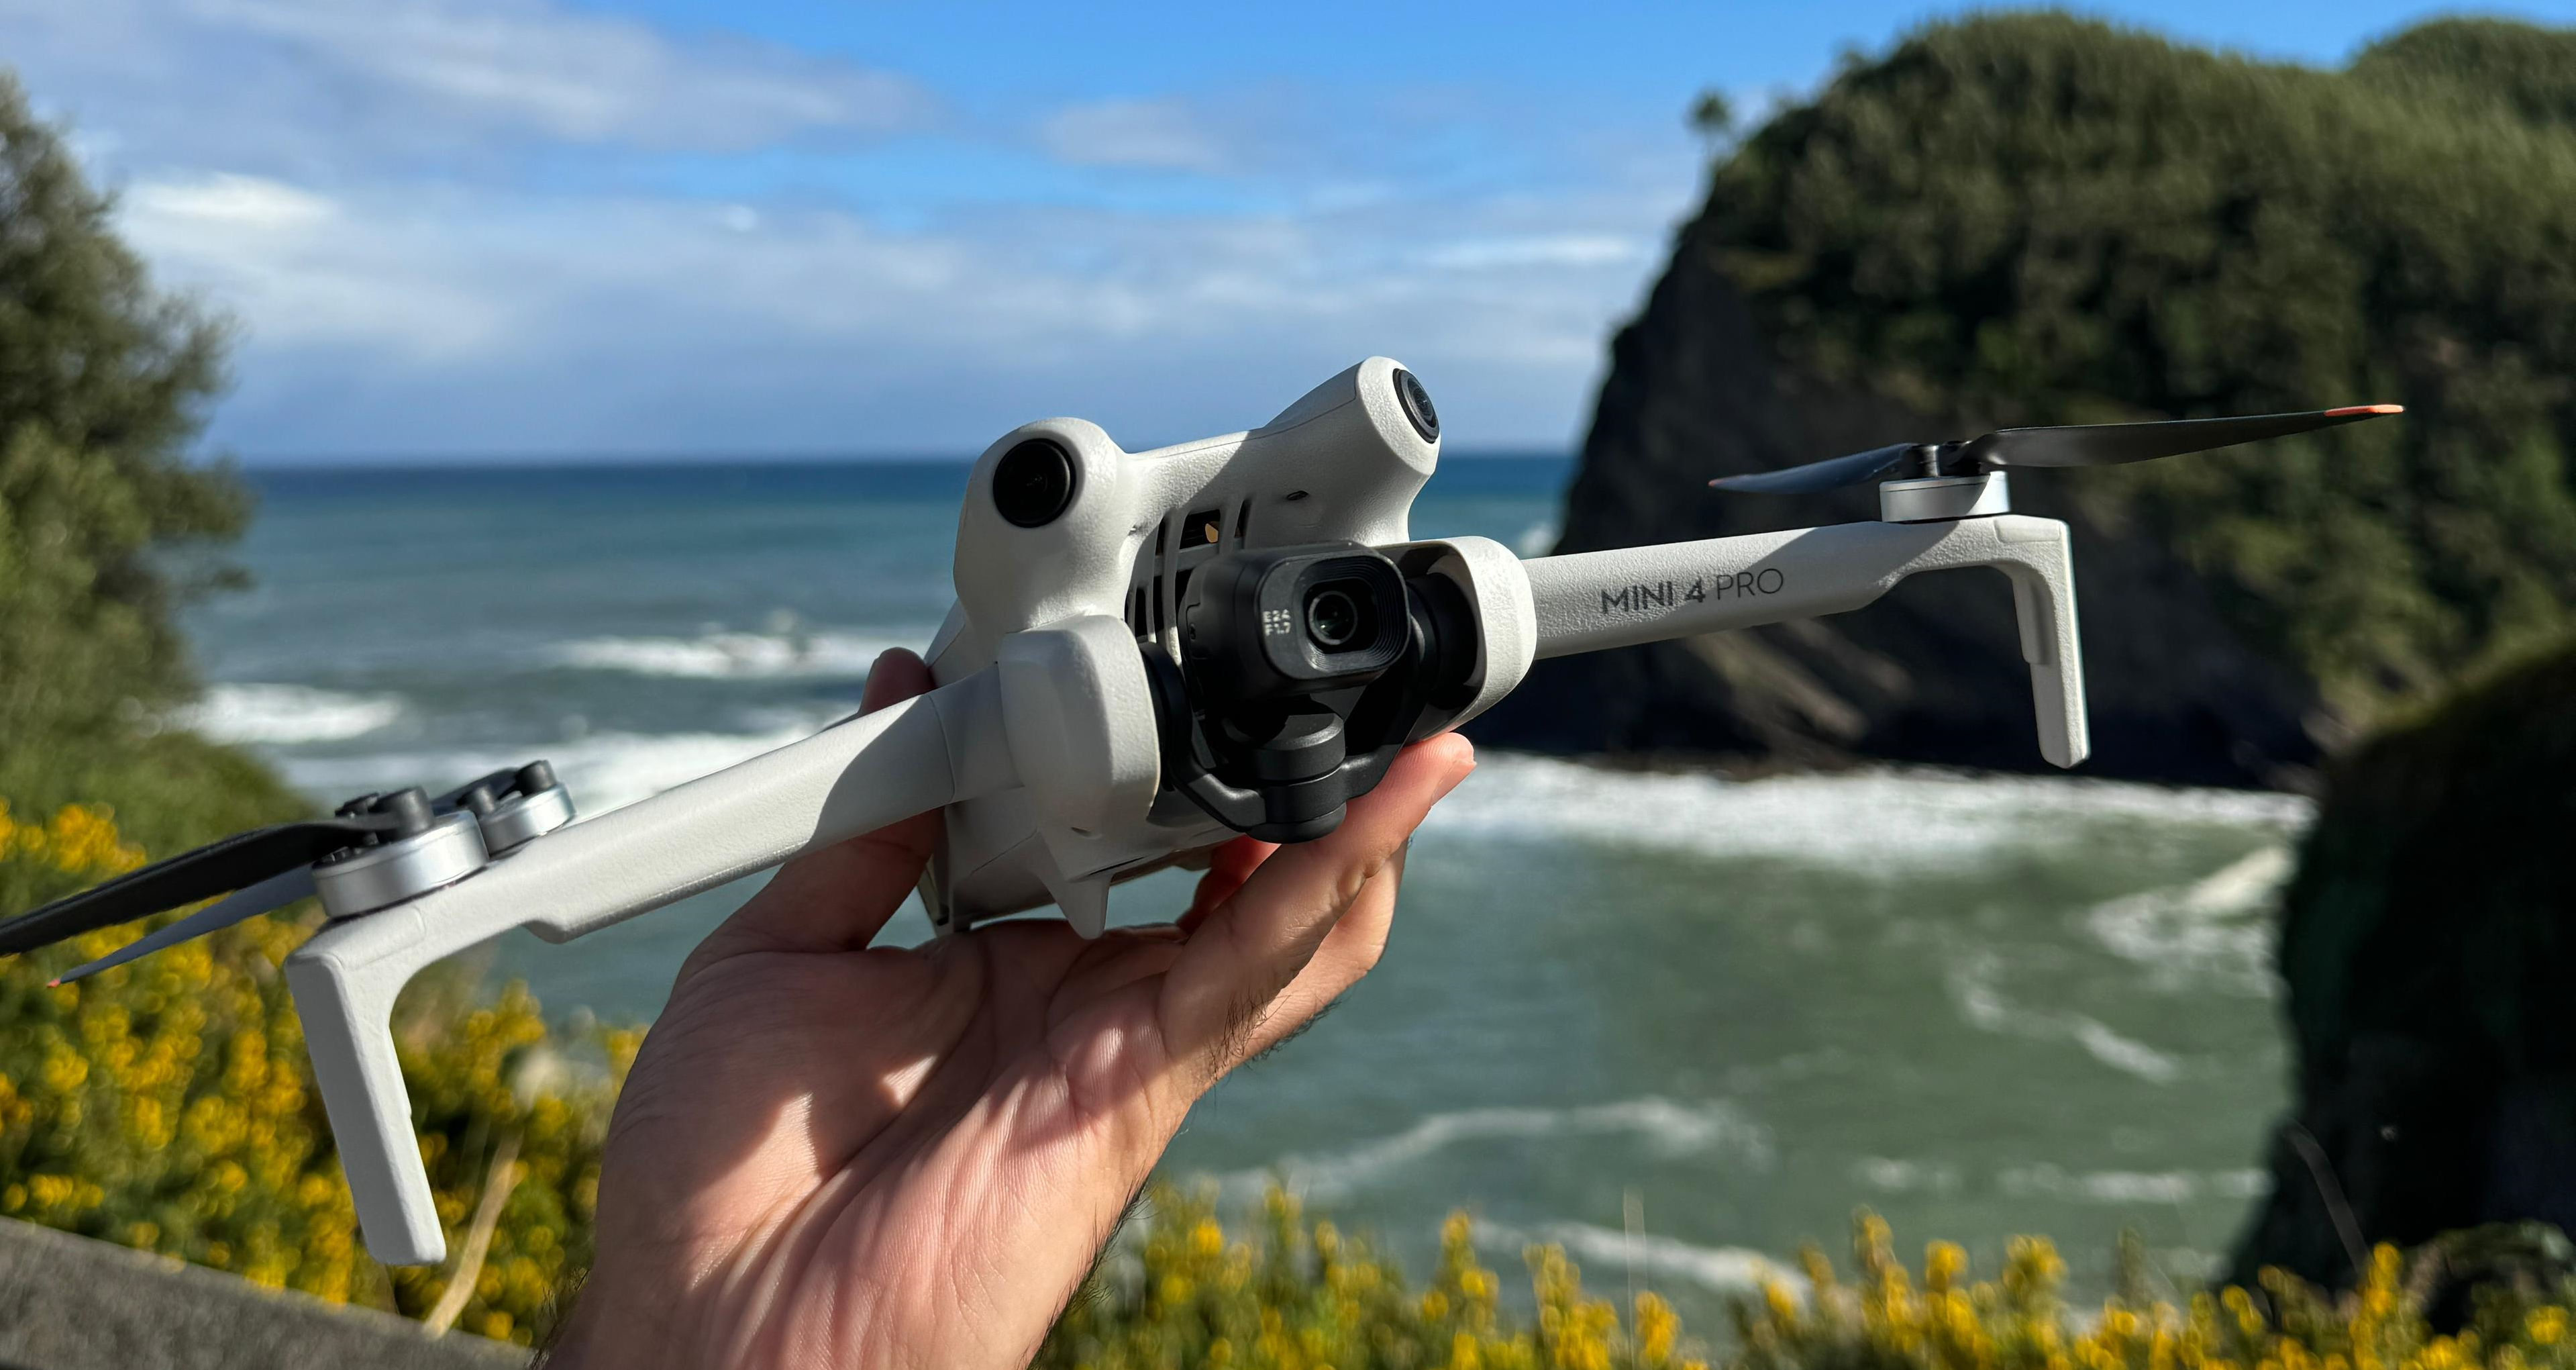 Mavic Mini: ¿puedo volar este dron dónde quiera al pesar menos de